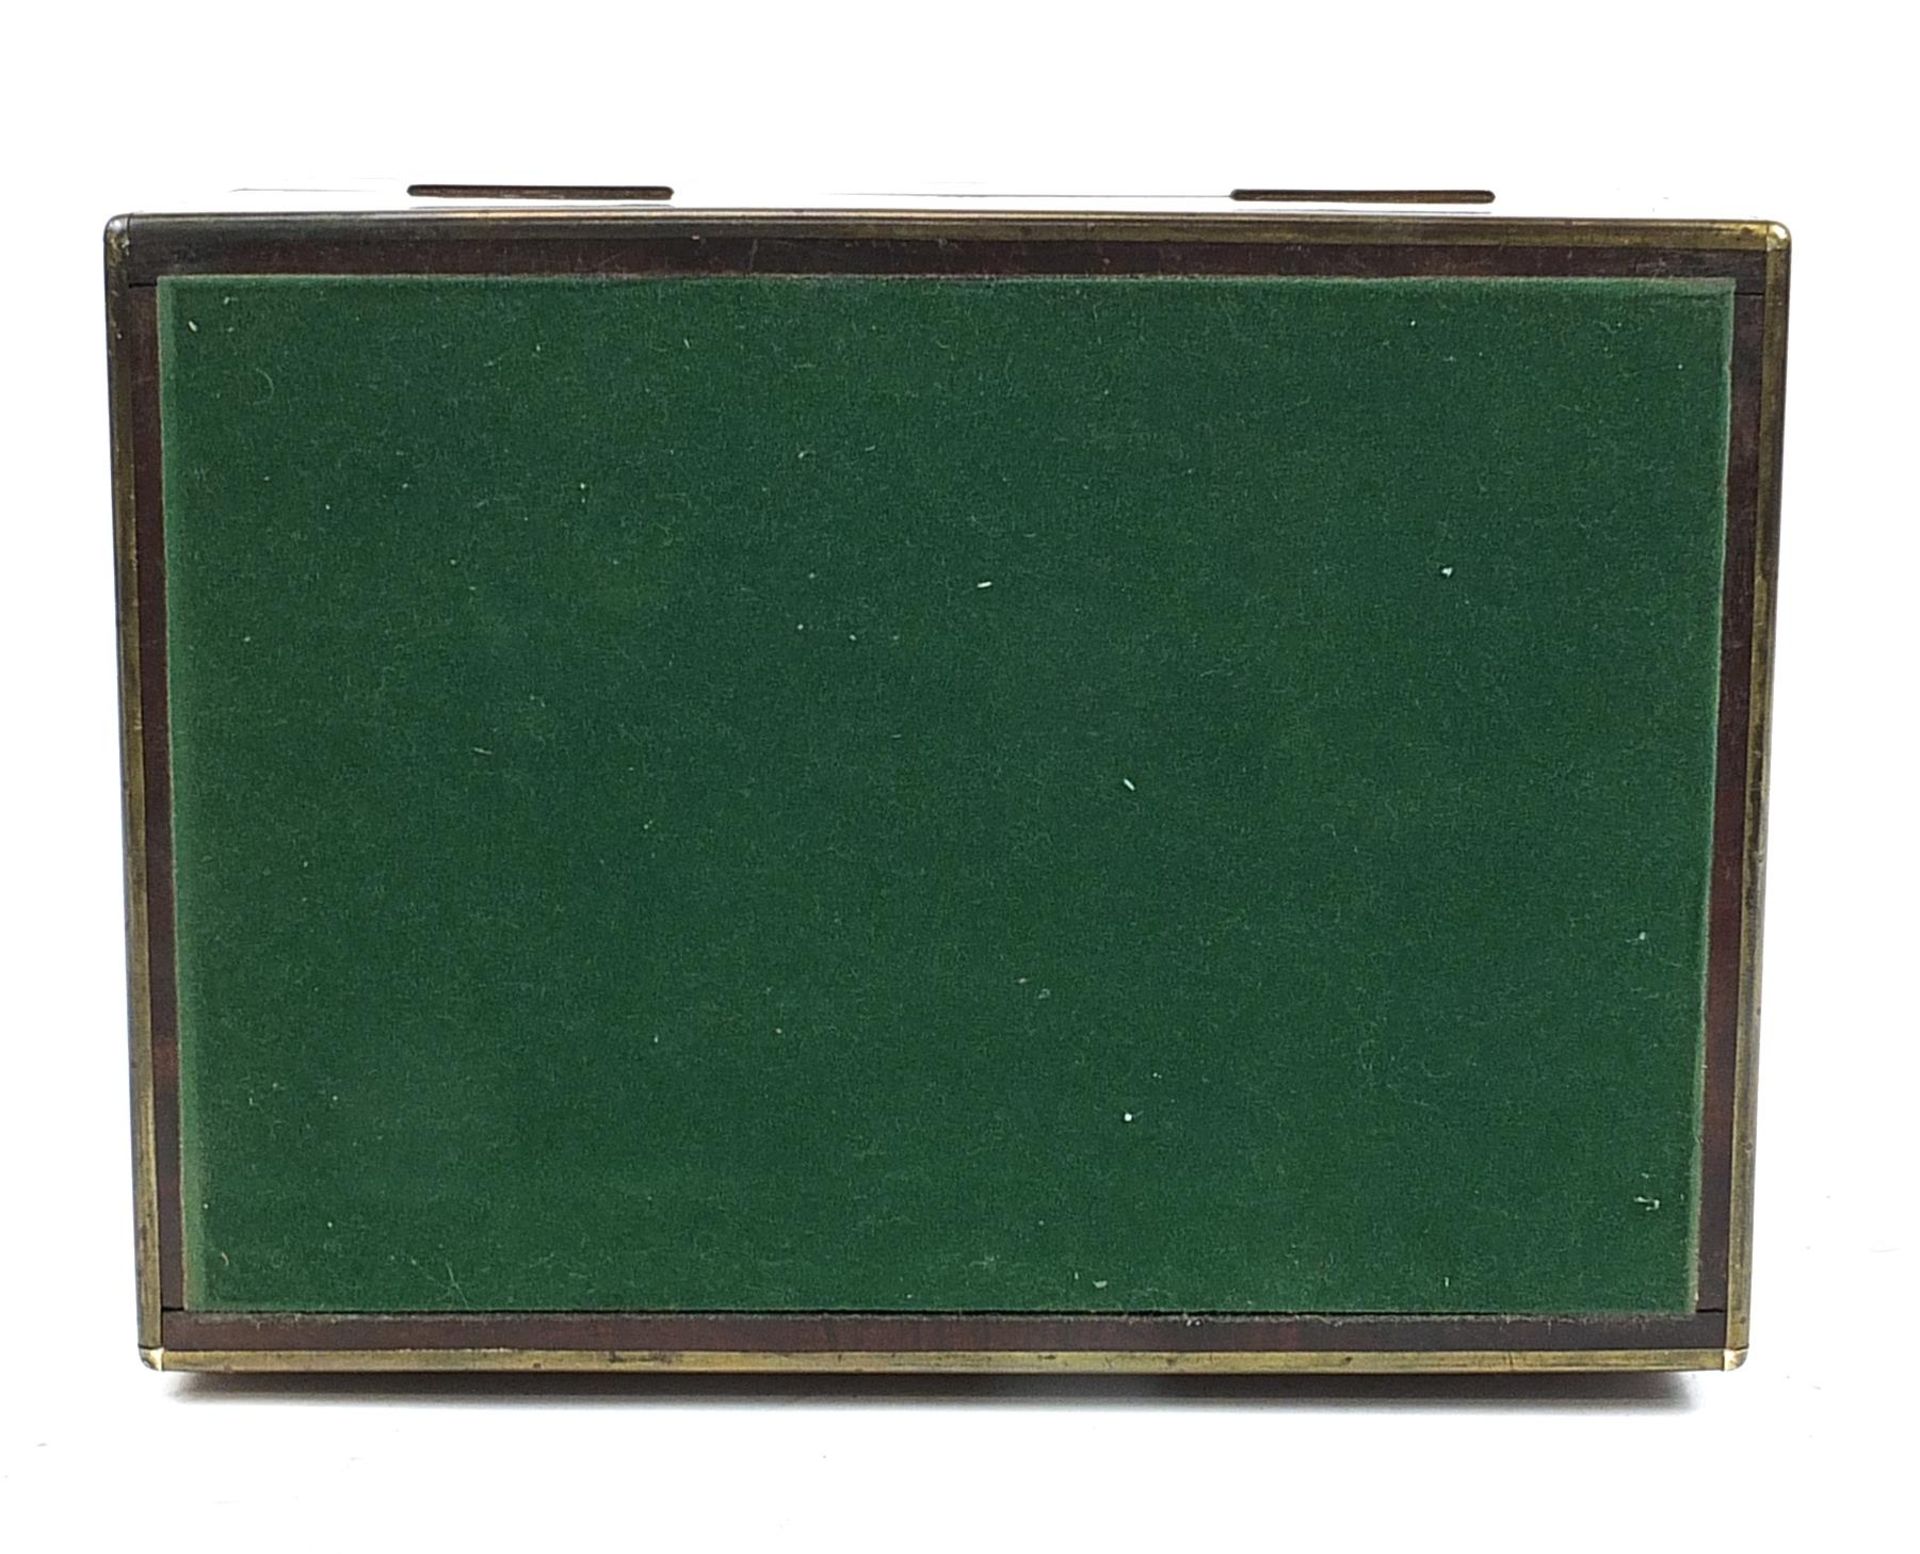 Victorian mahogany box with Brahma lock converted to a humidor, 21cm H x 35.5cm W x 25cm D - Image 5 of 5